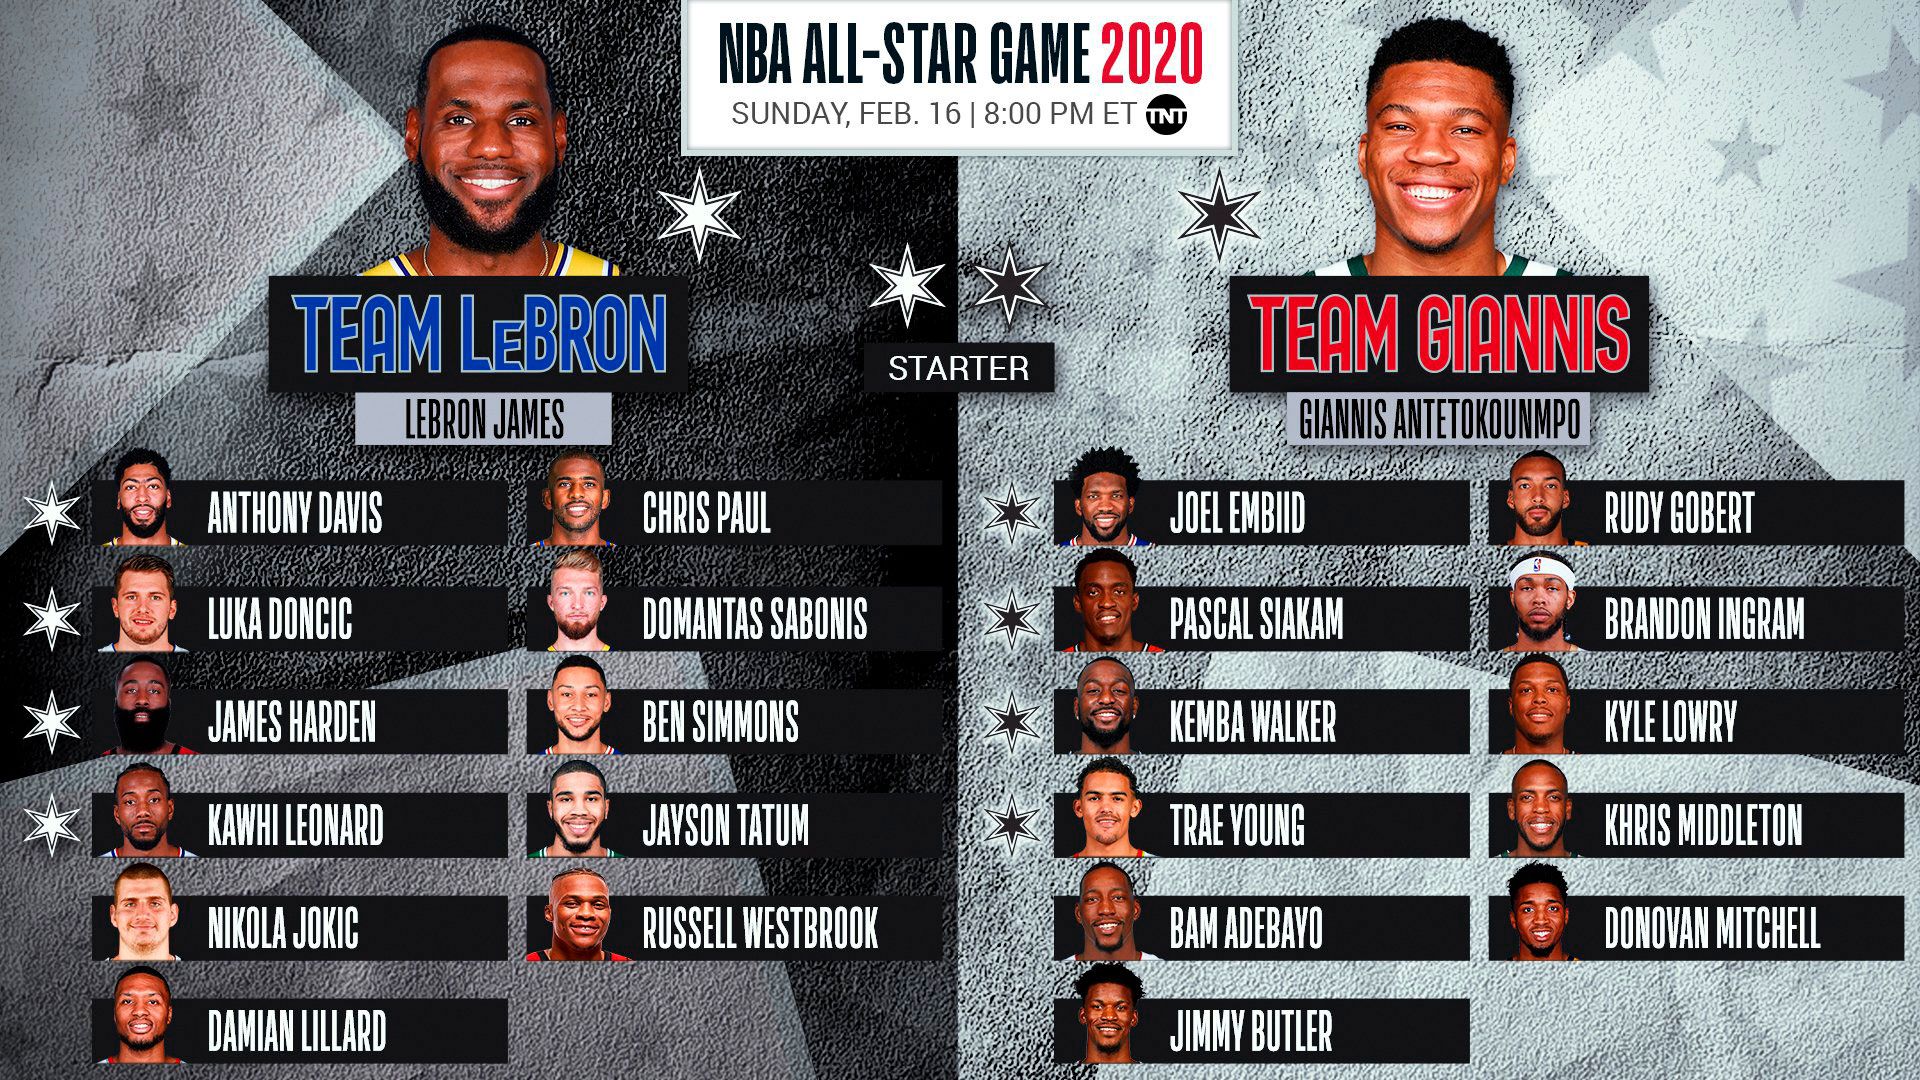 Booker reemplazará al lesionado Damian Lillard en el Juego de las Estrellas
(@NBAAllStar)